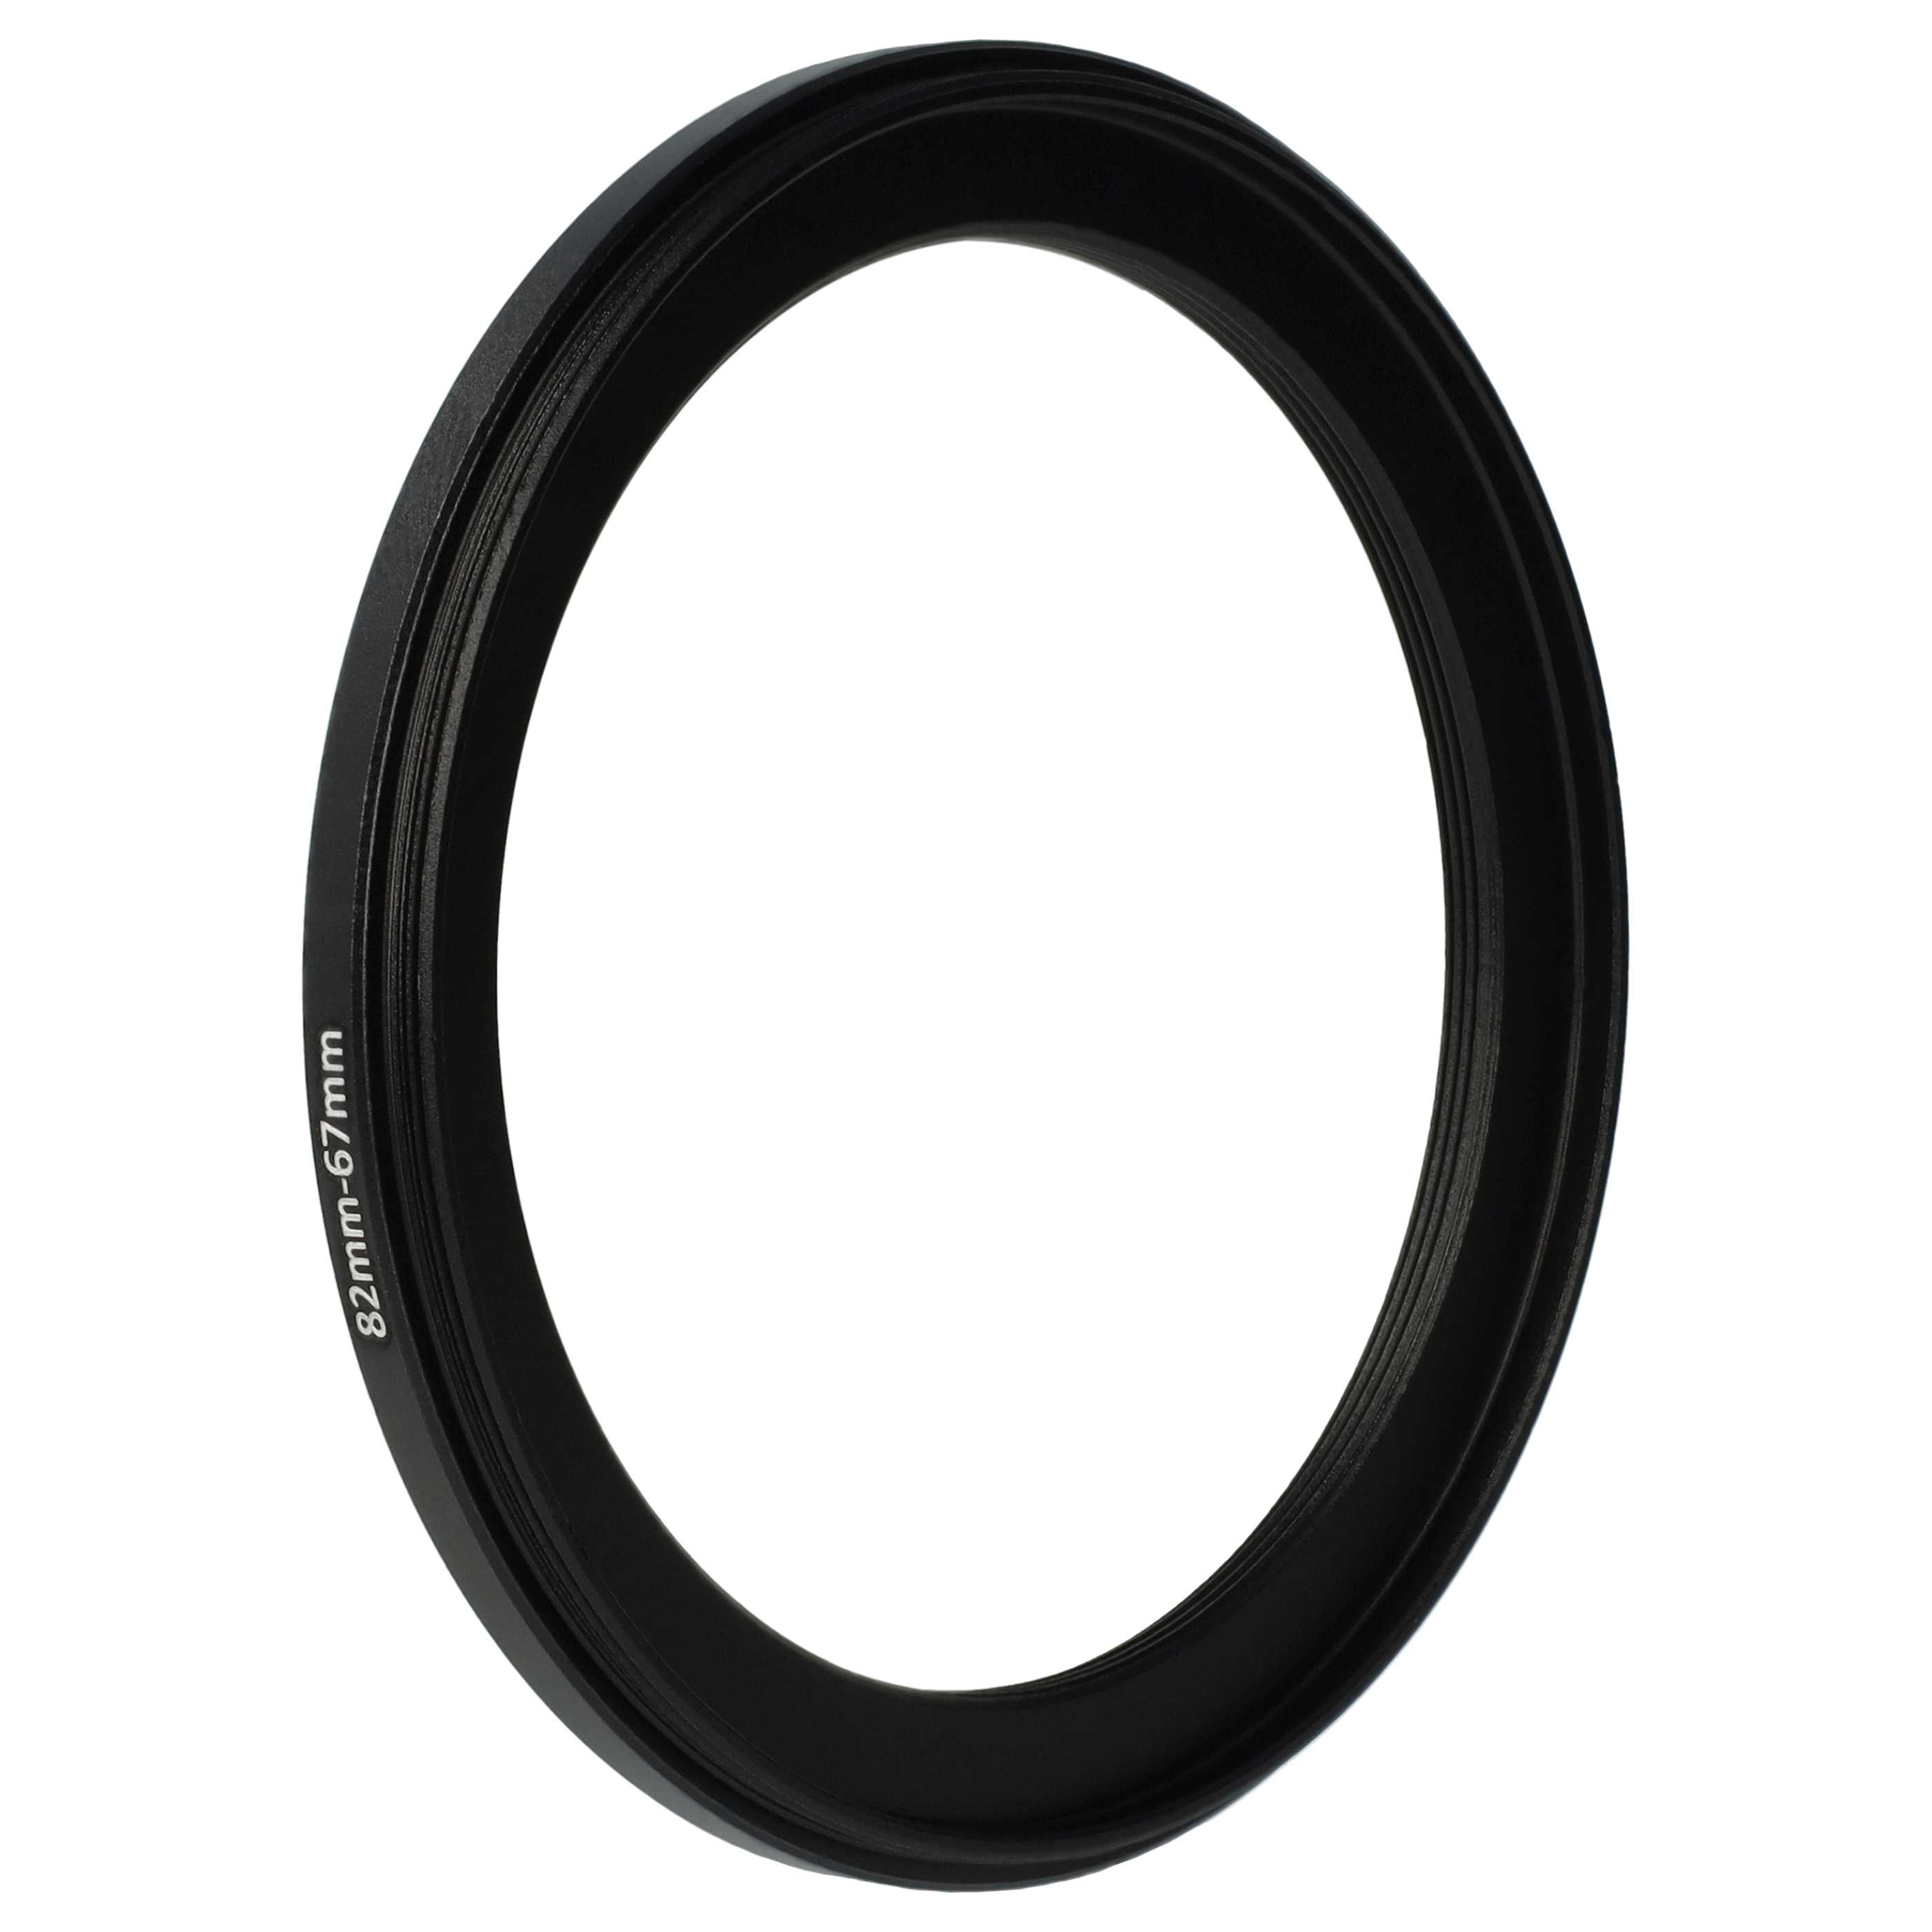 Redukcja filtrowa adapter Step-Down 82 mm - 67 mm pasująca do obiektywu - metal, czarny